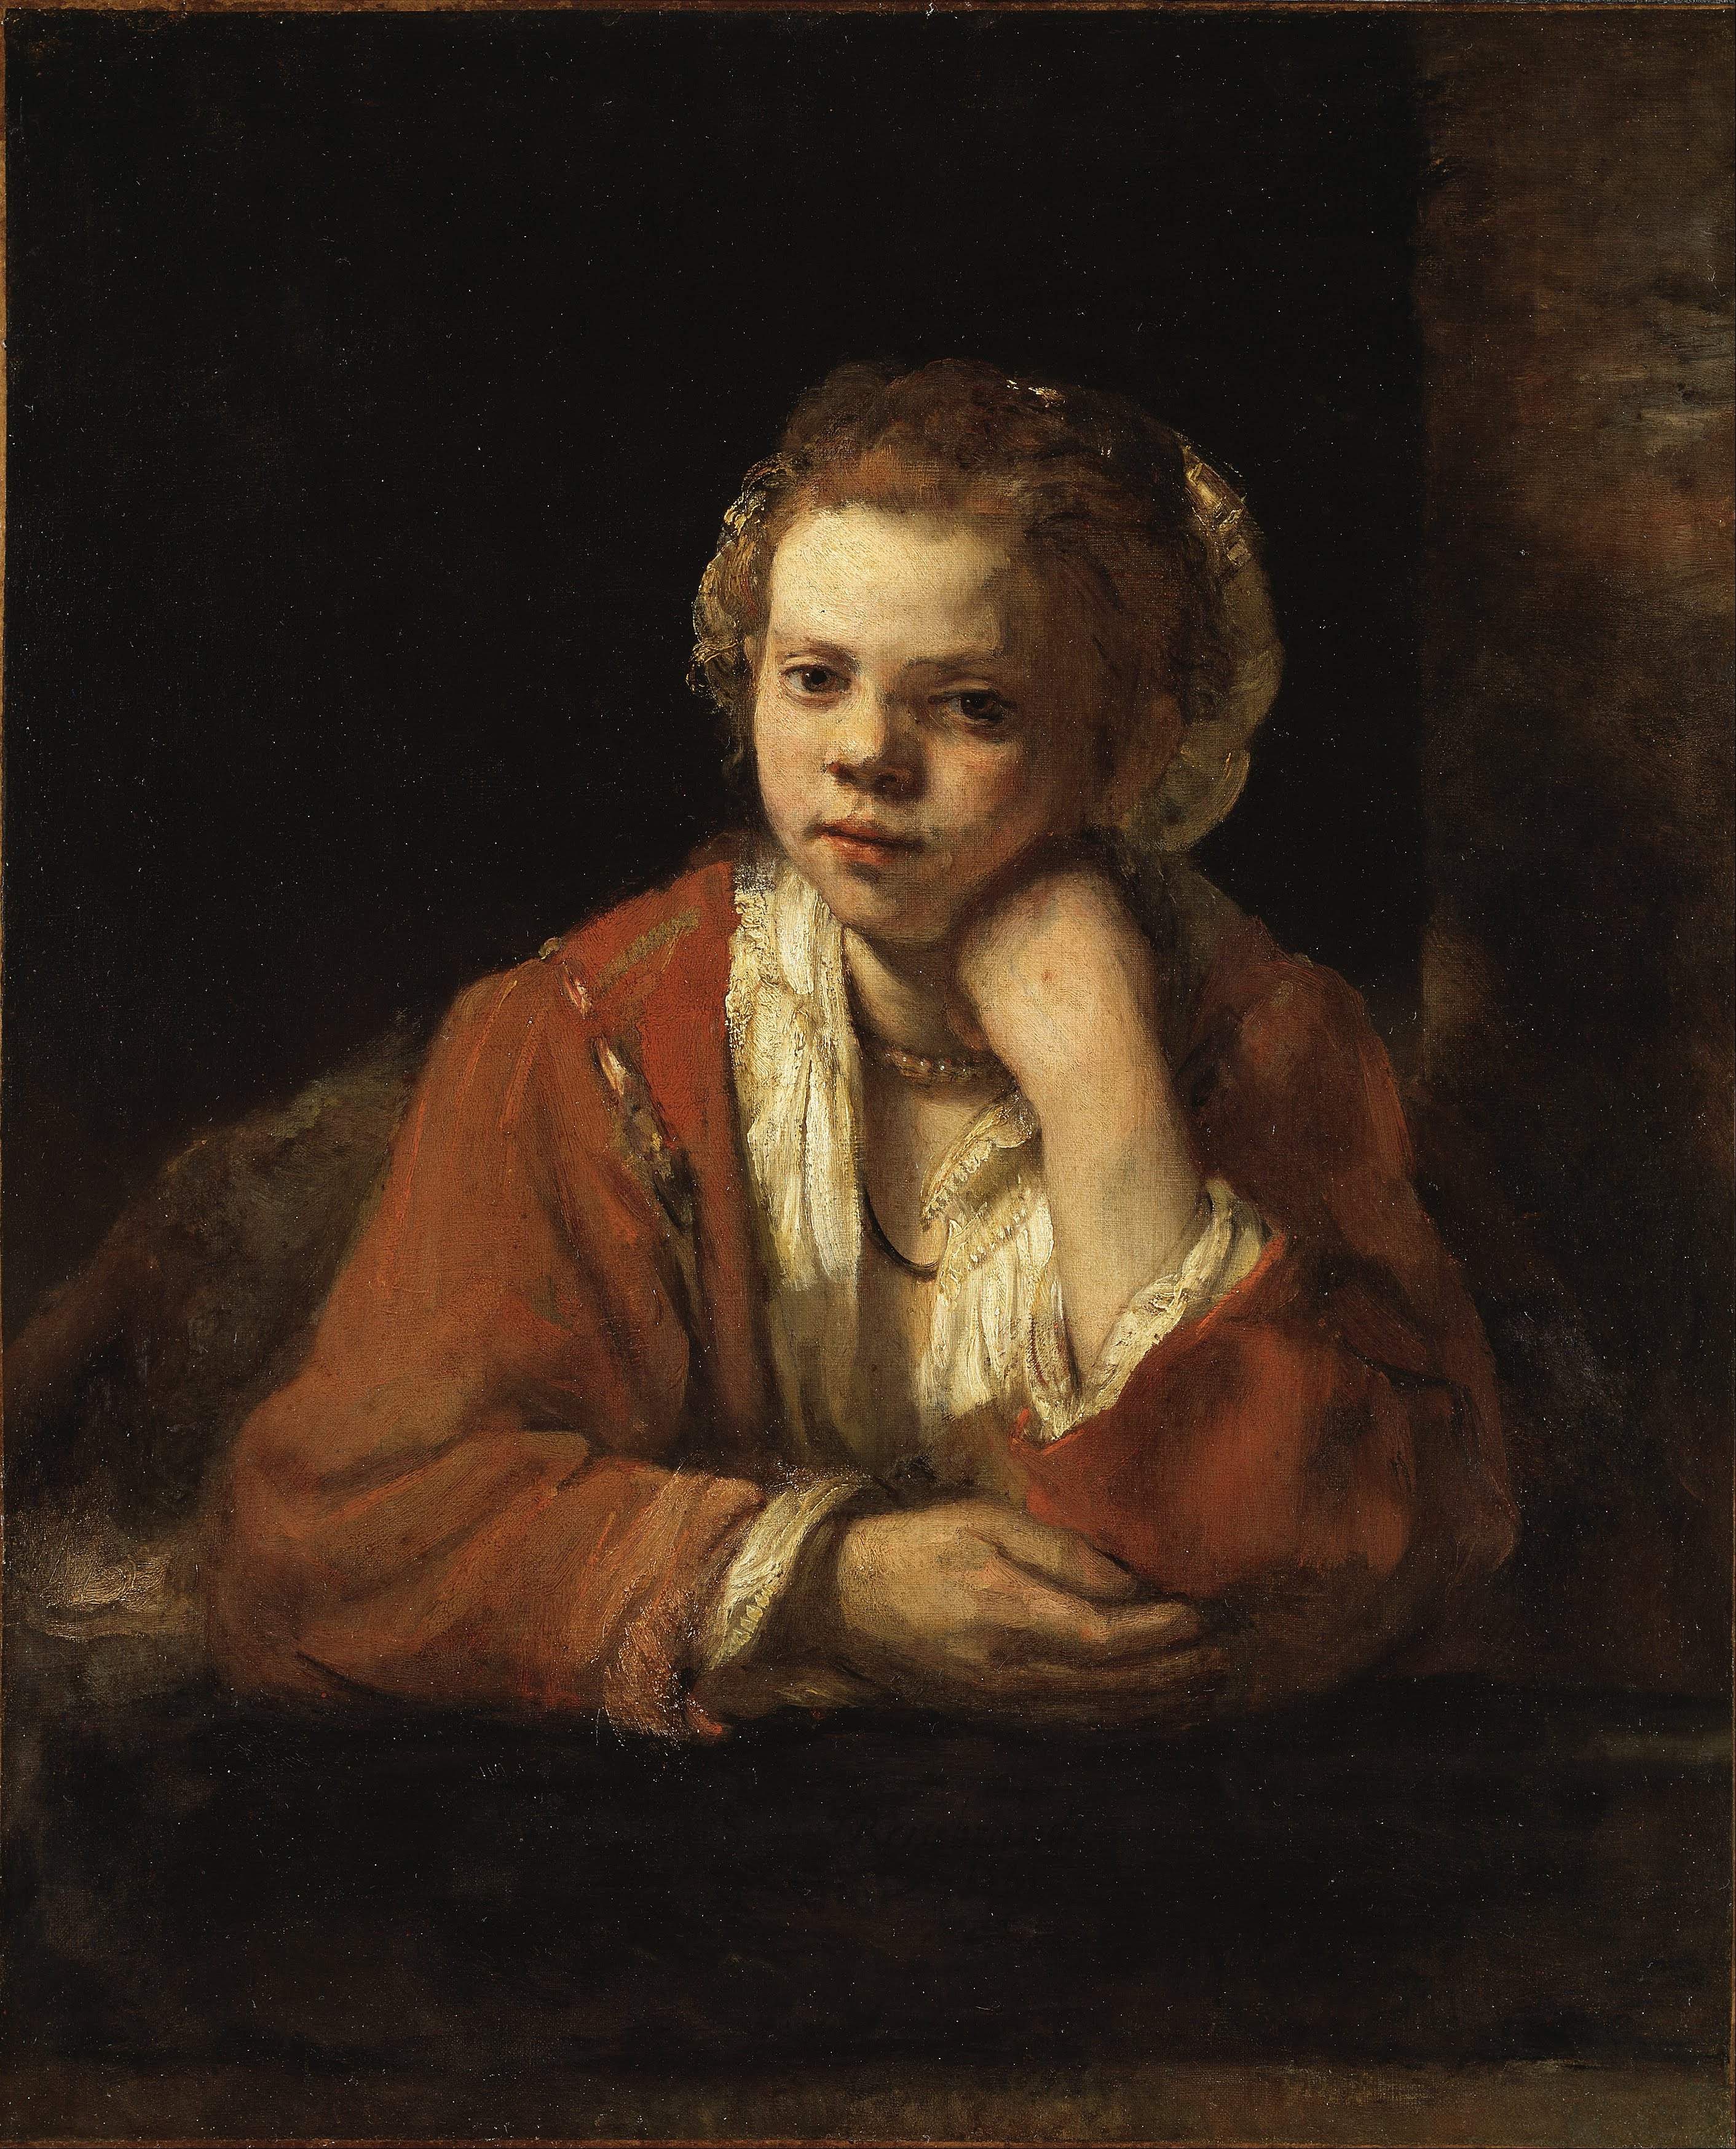 La criada de la cocina by Rembrandt van Rijn - 1651 - 64 x 78 cm Museo Nacional de Estocolmo